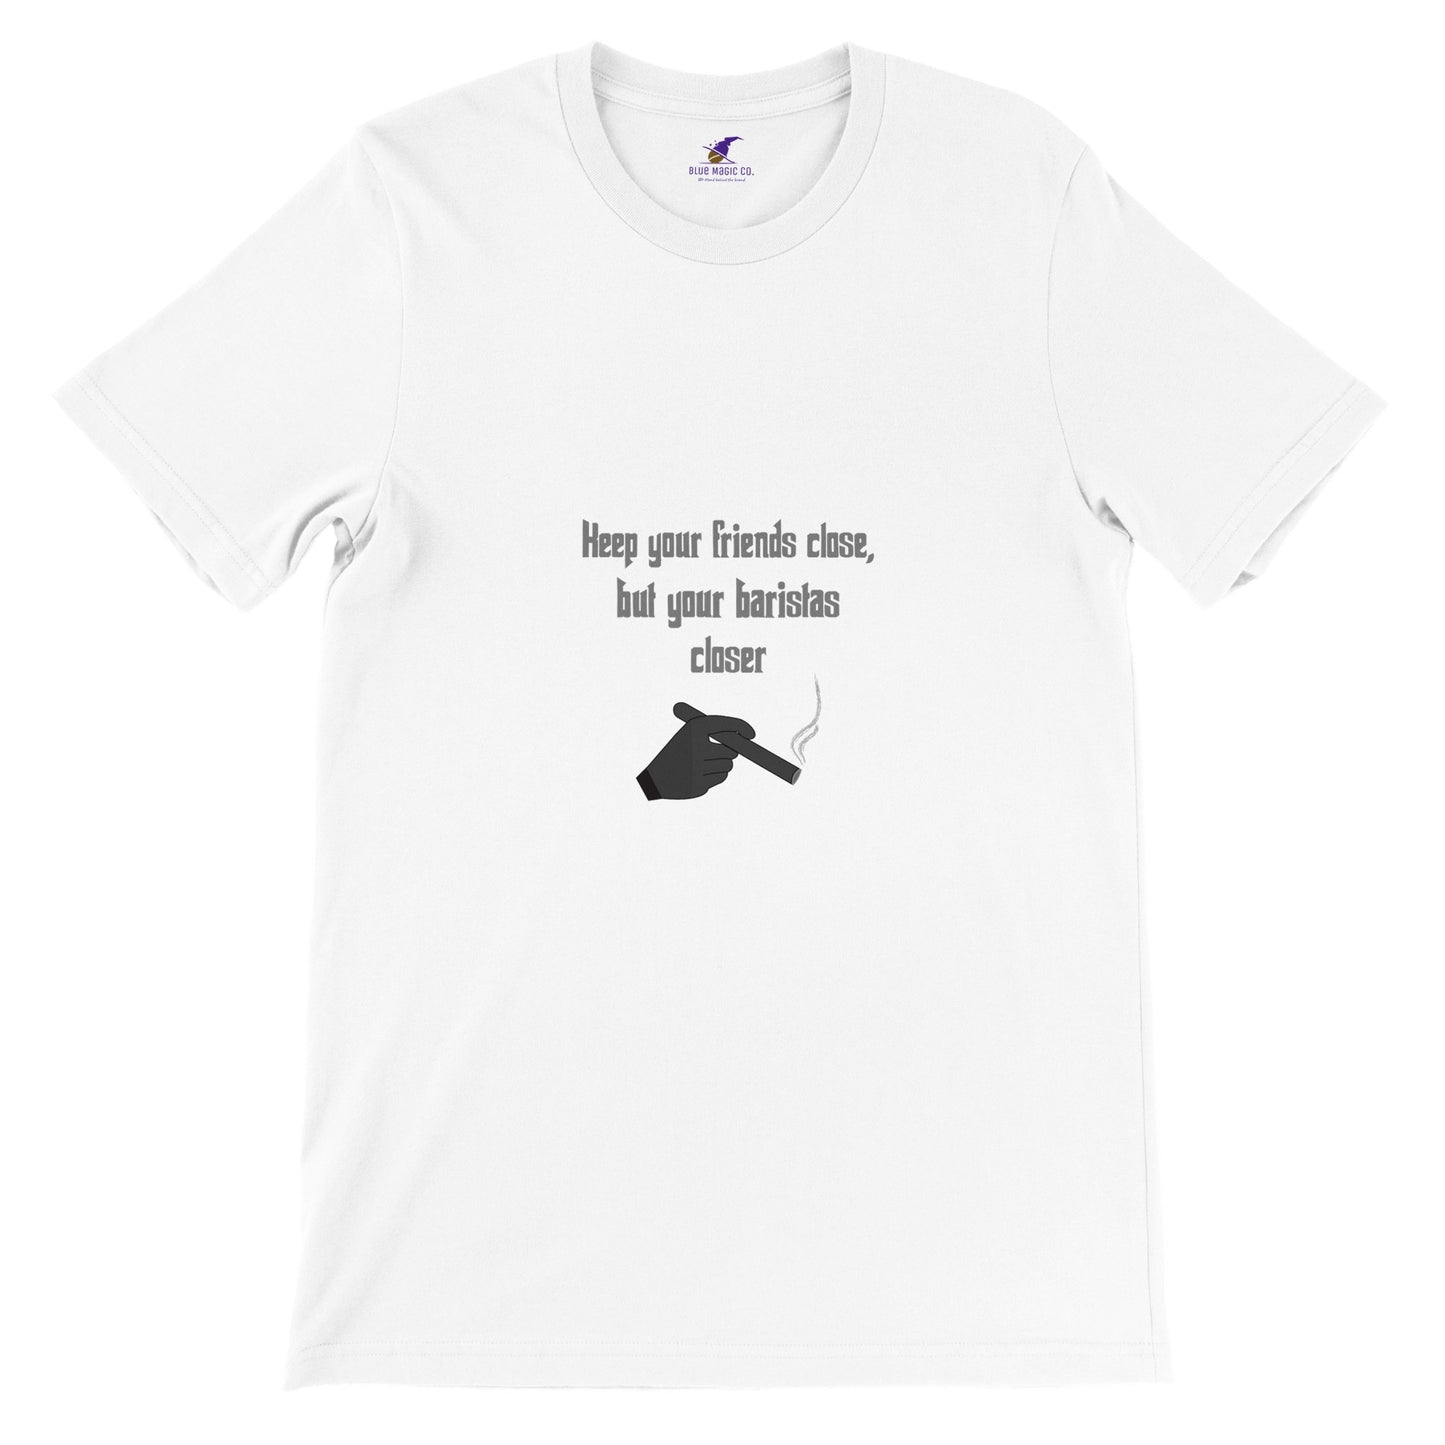 Premium Unisex "Keep Your Friends Close" T-shirt